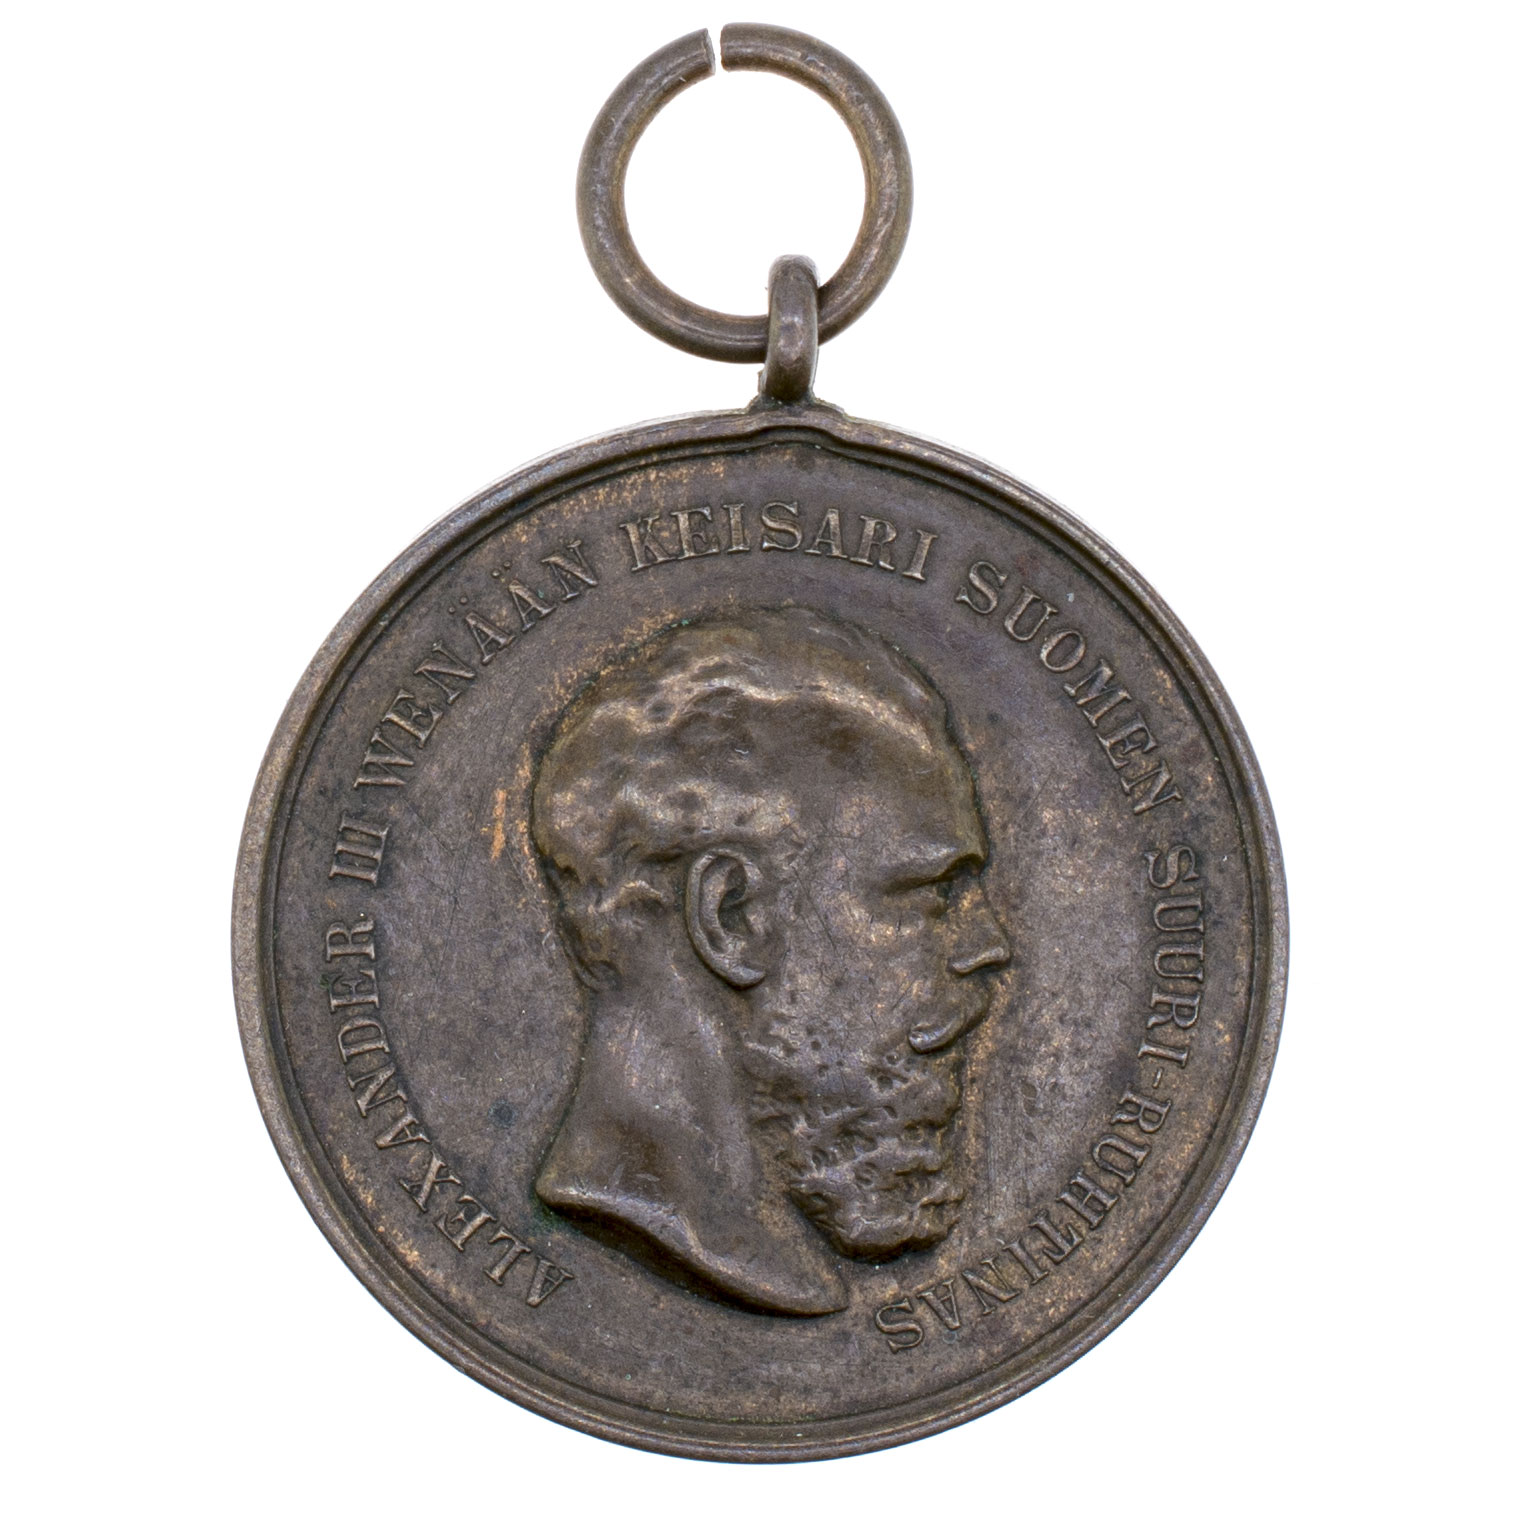 Медаль «За знание и труды» Императорского Финляндского сельскохозяйственного общества с портретом Императора Александра III.